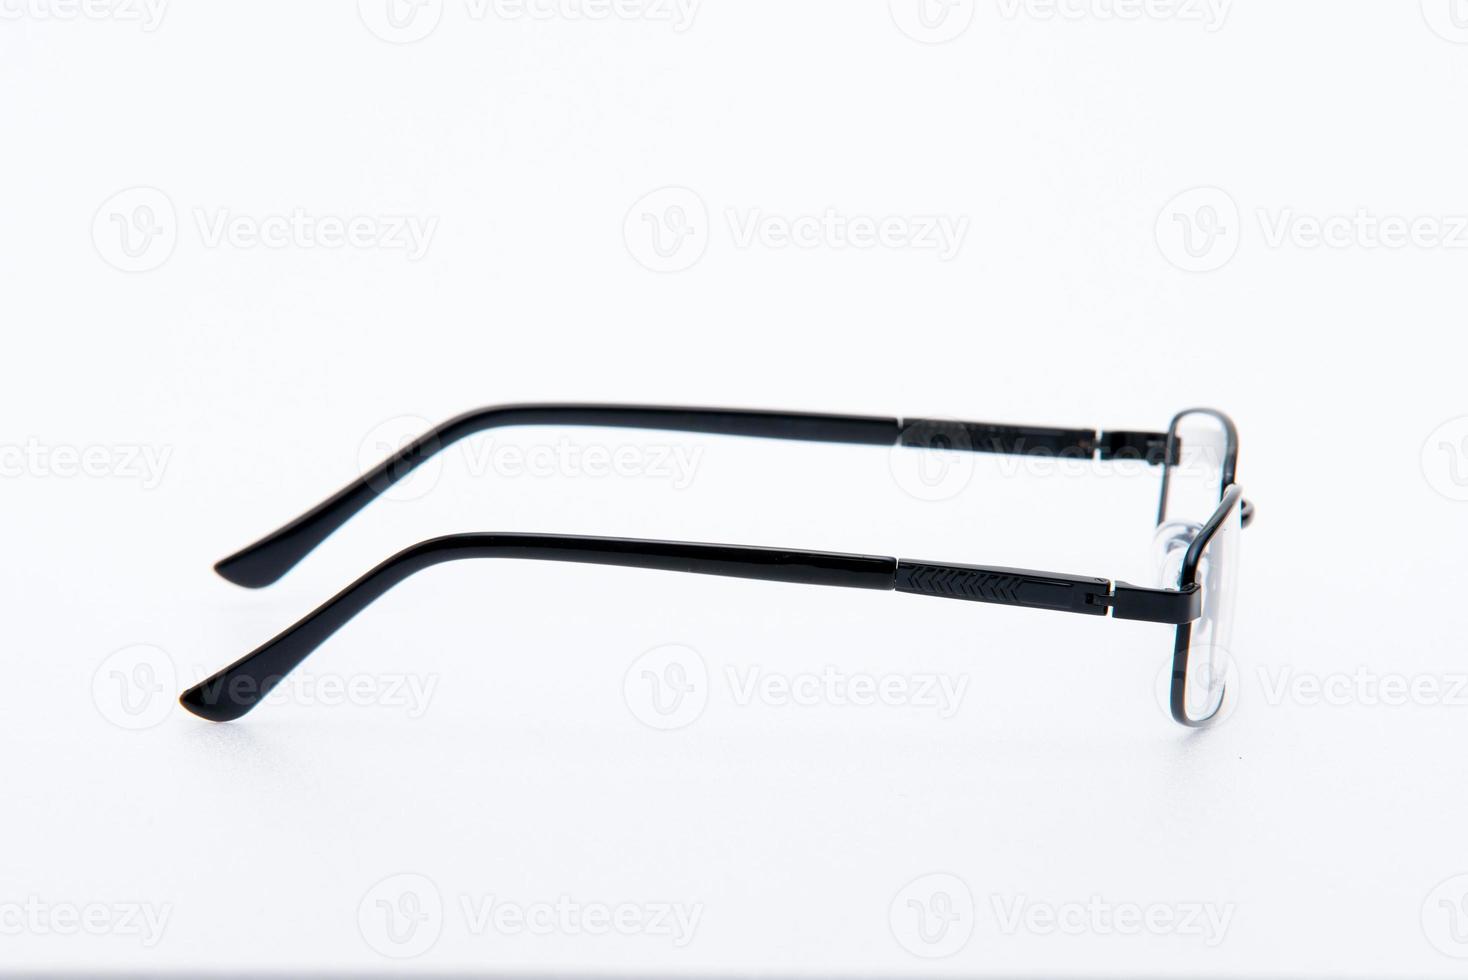 moda occhiali da sole cornici nere su sfondo bianco. foto